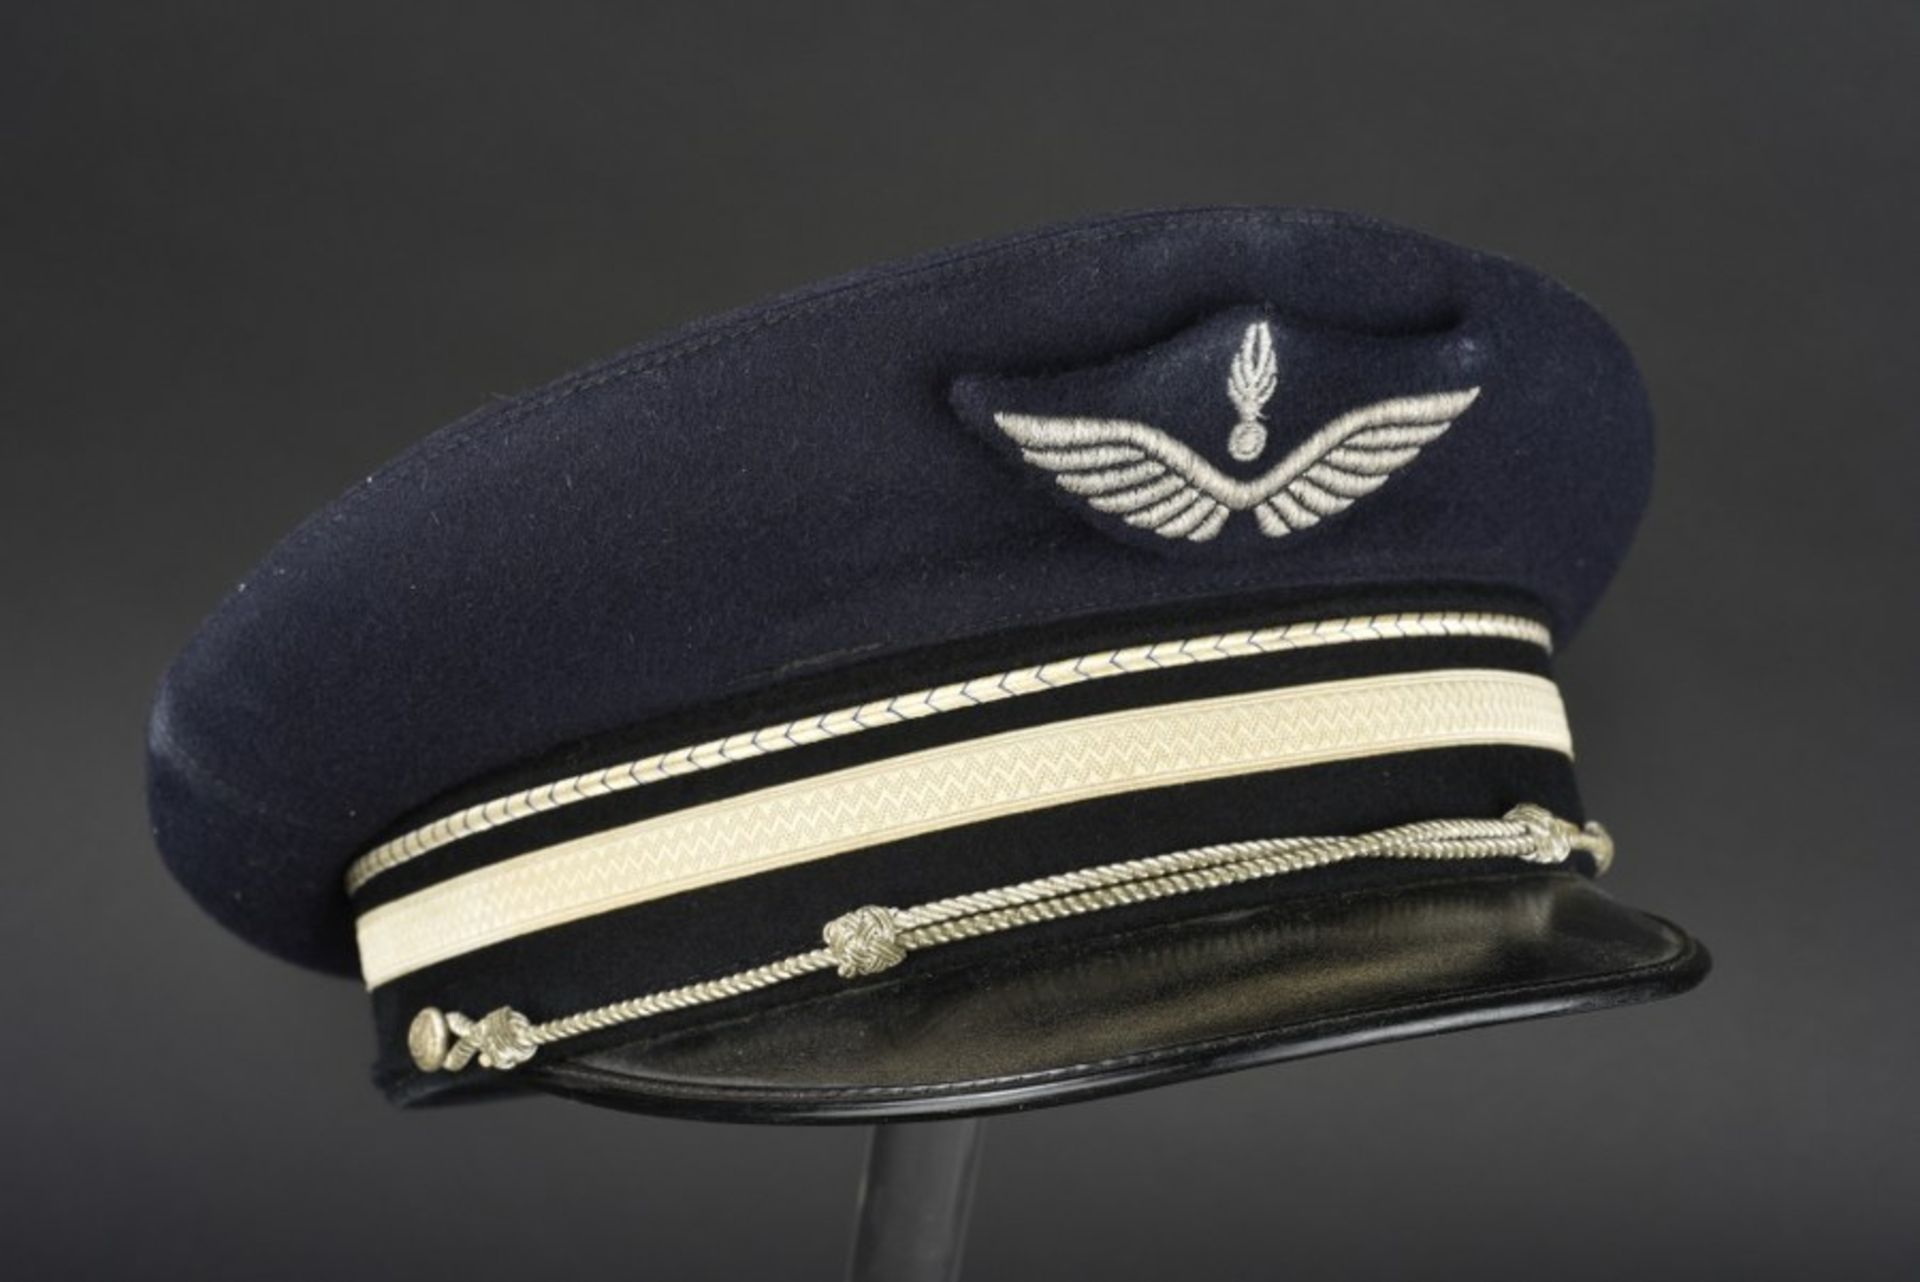 Ensemble de casquette de la Gendarmerie (après-guerre et contemporain) comprenant 2 gendarmerie de - Image 3 of 4